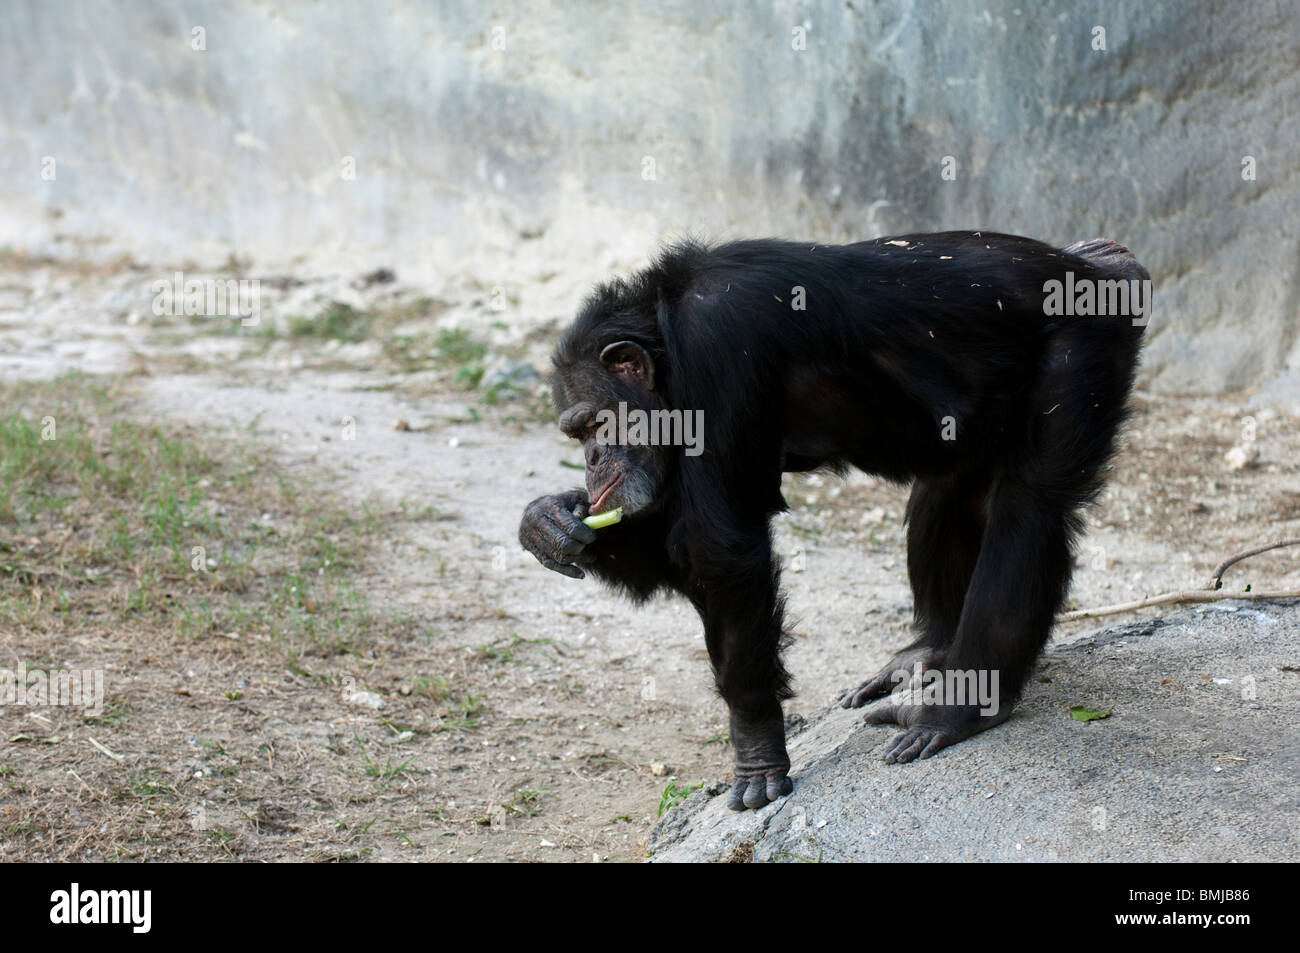 El chimpancé relajándose bajo el sol Foto de stock